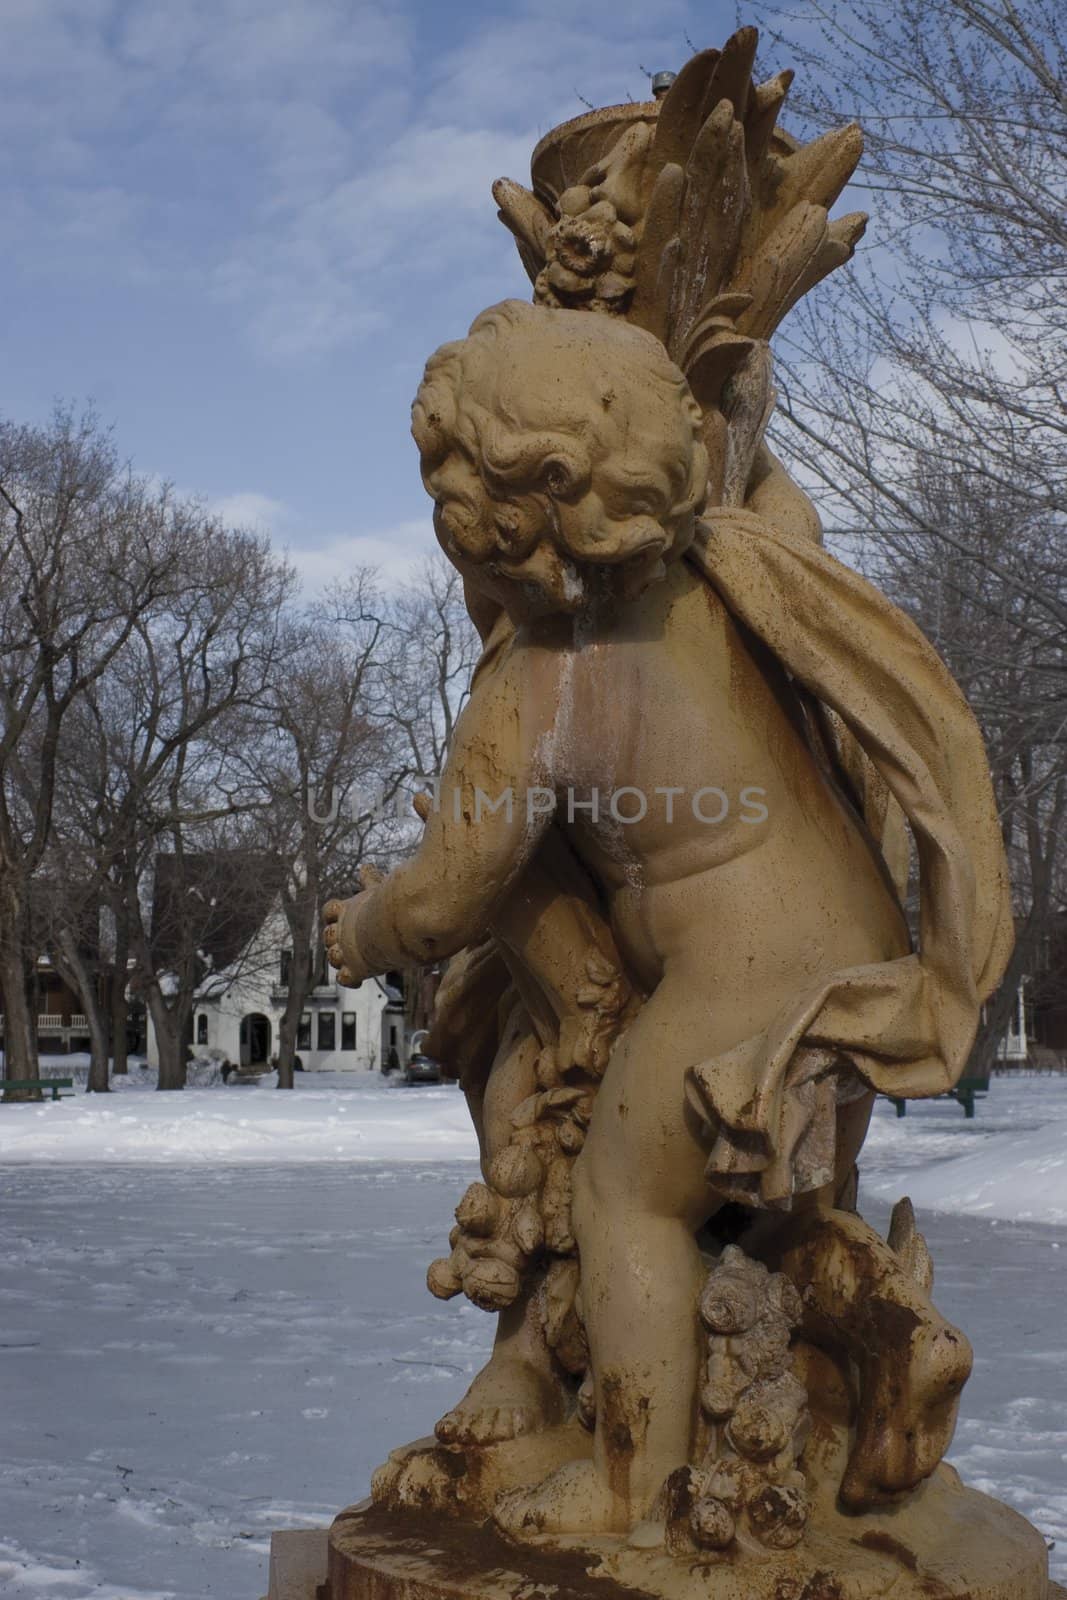 Cherubin statue during winter in a park